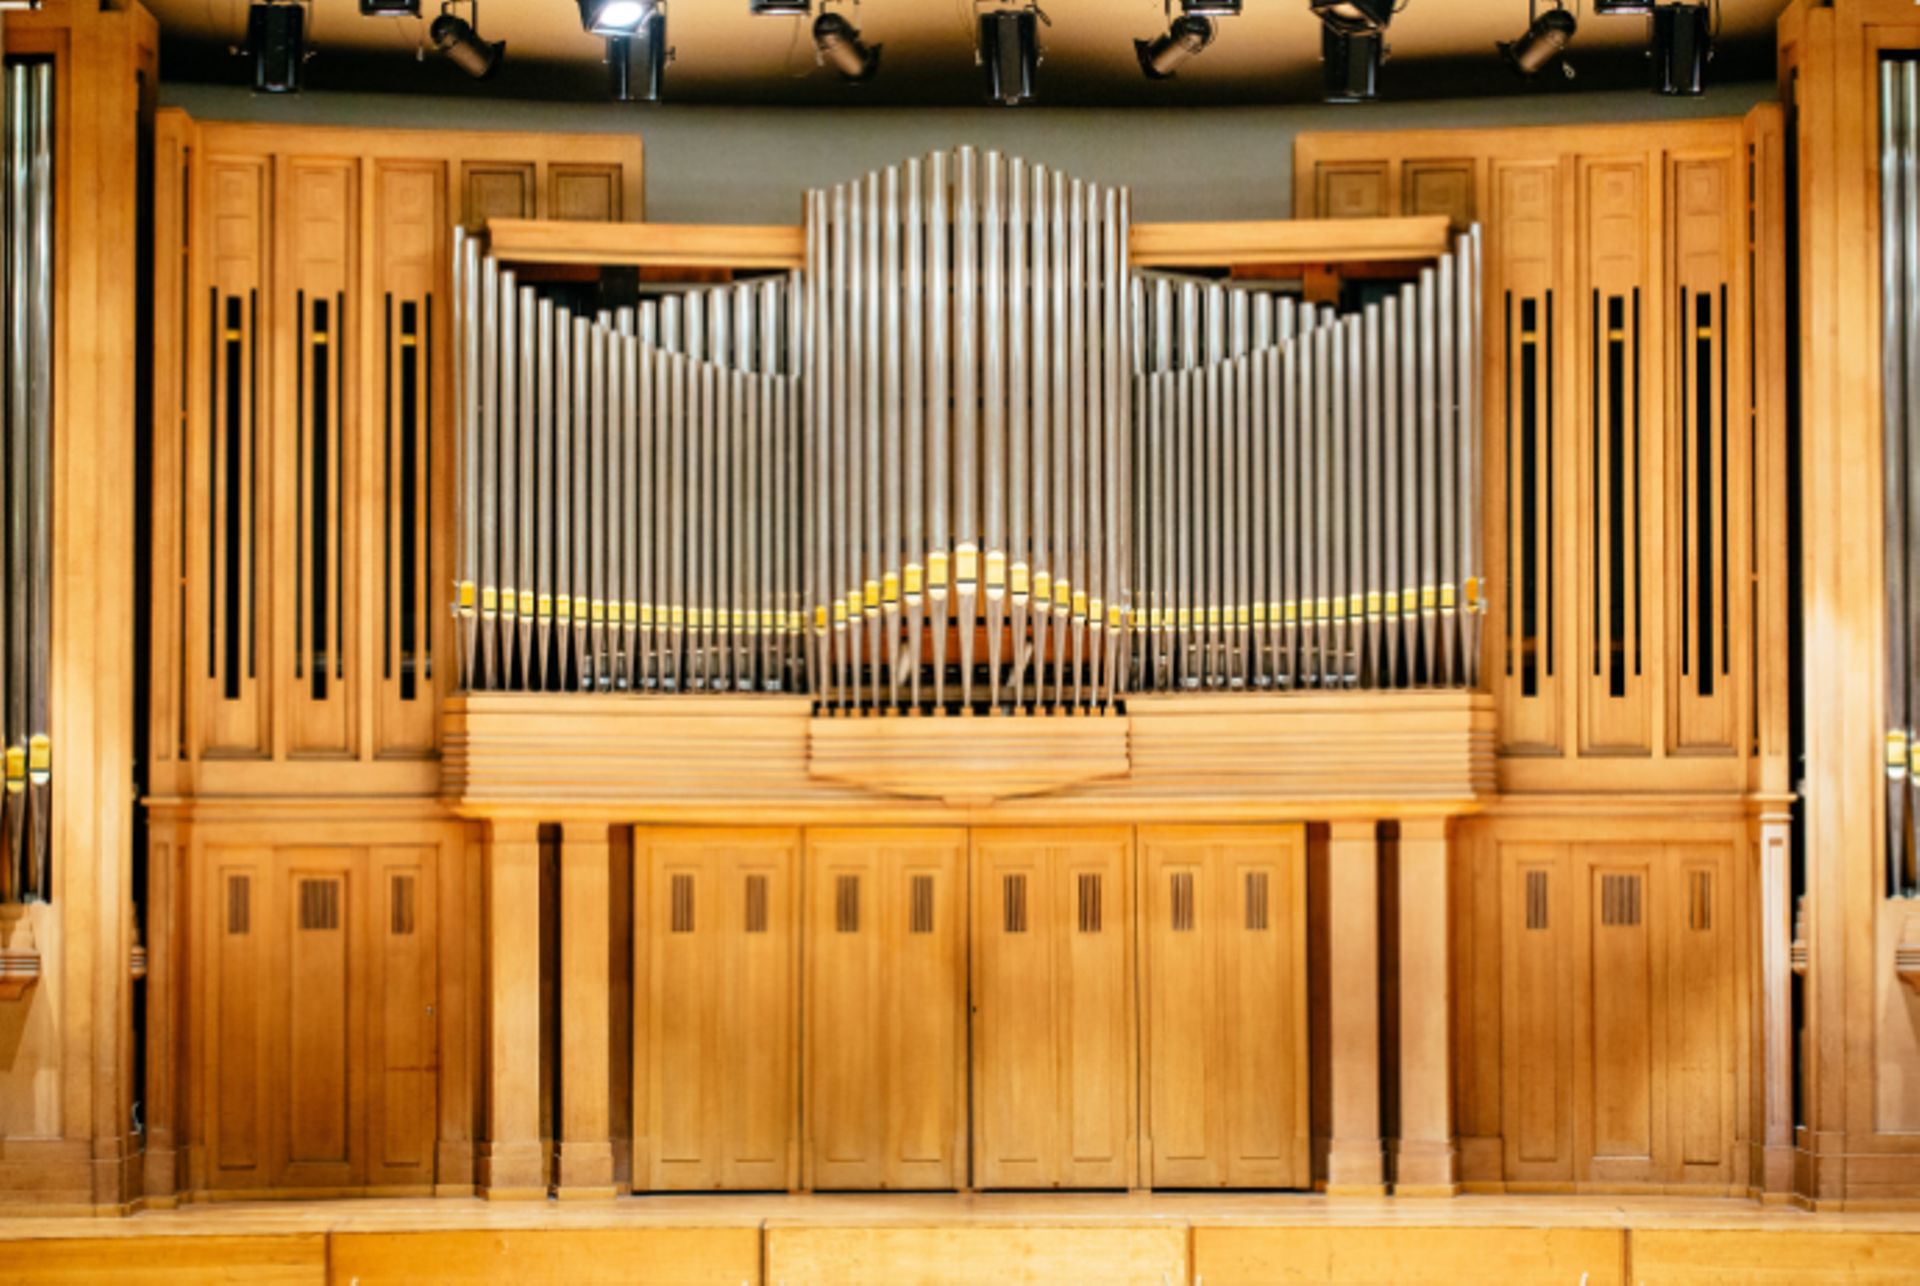 Bruxelles: après 50 ans de silence le grand orgue du Palais des